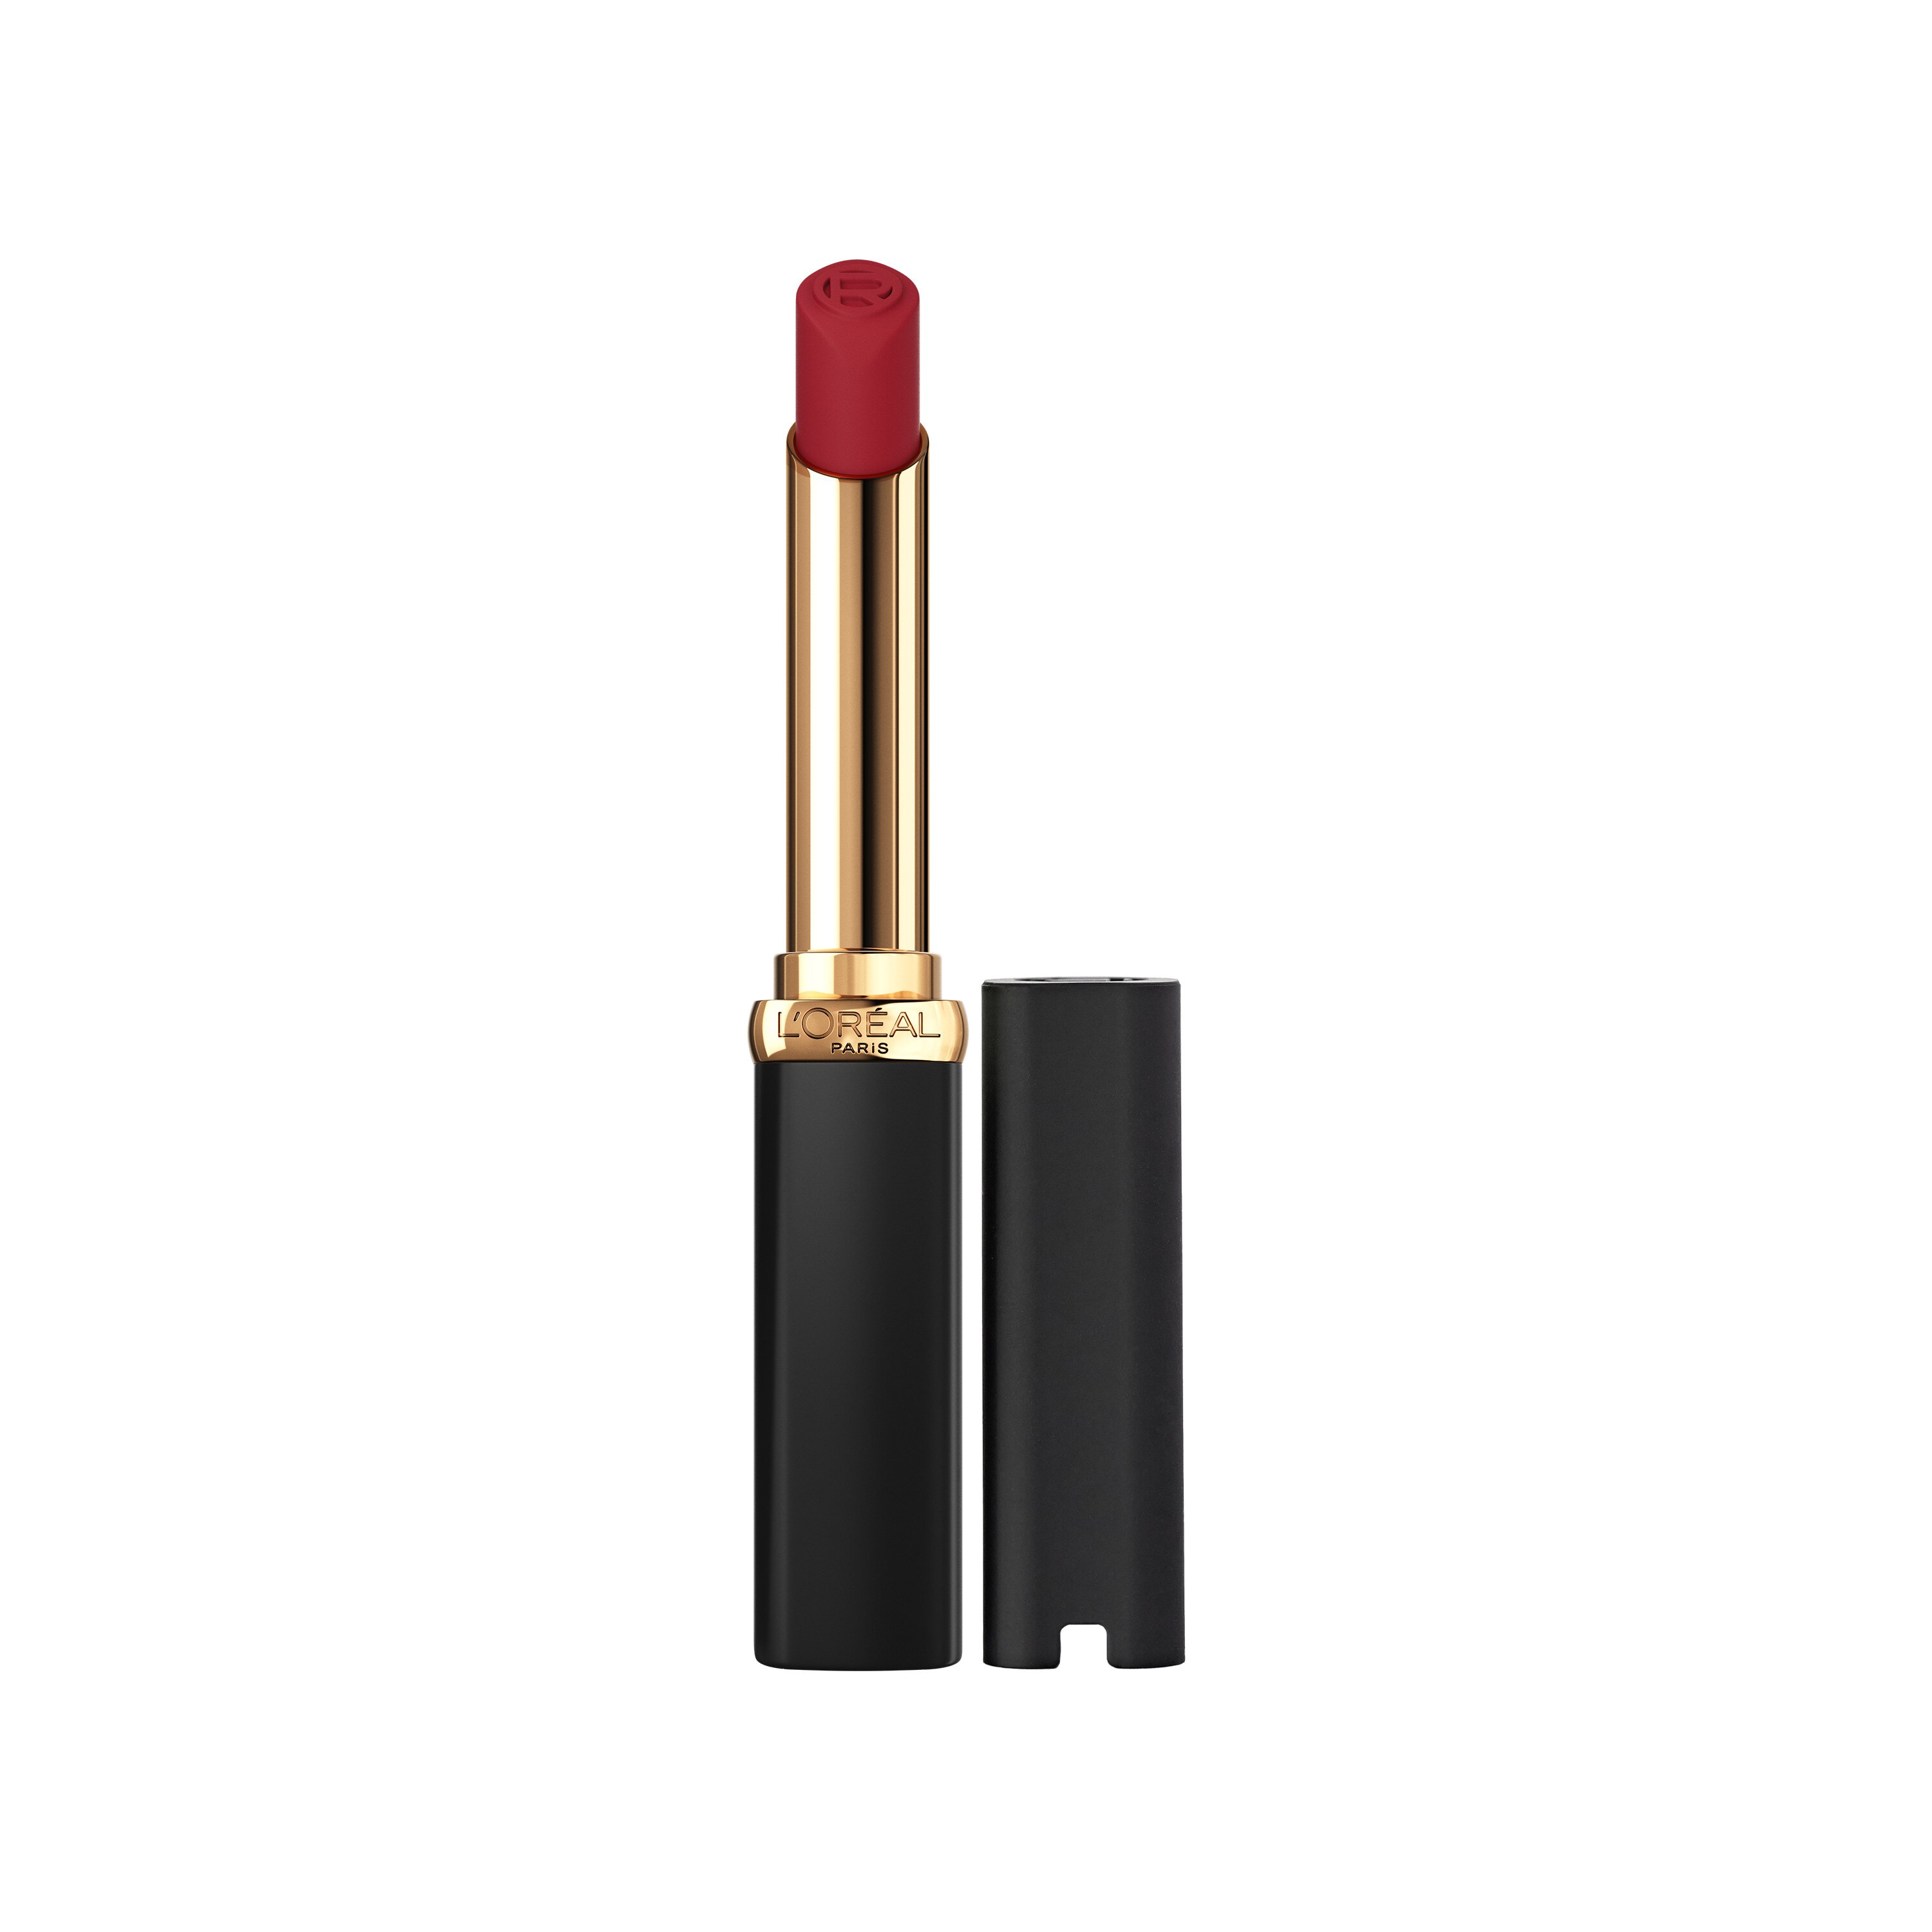 L'Oreal Paris Colour Riche Intense Volume Matte Lipstick, Worth It Intense , CVS